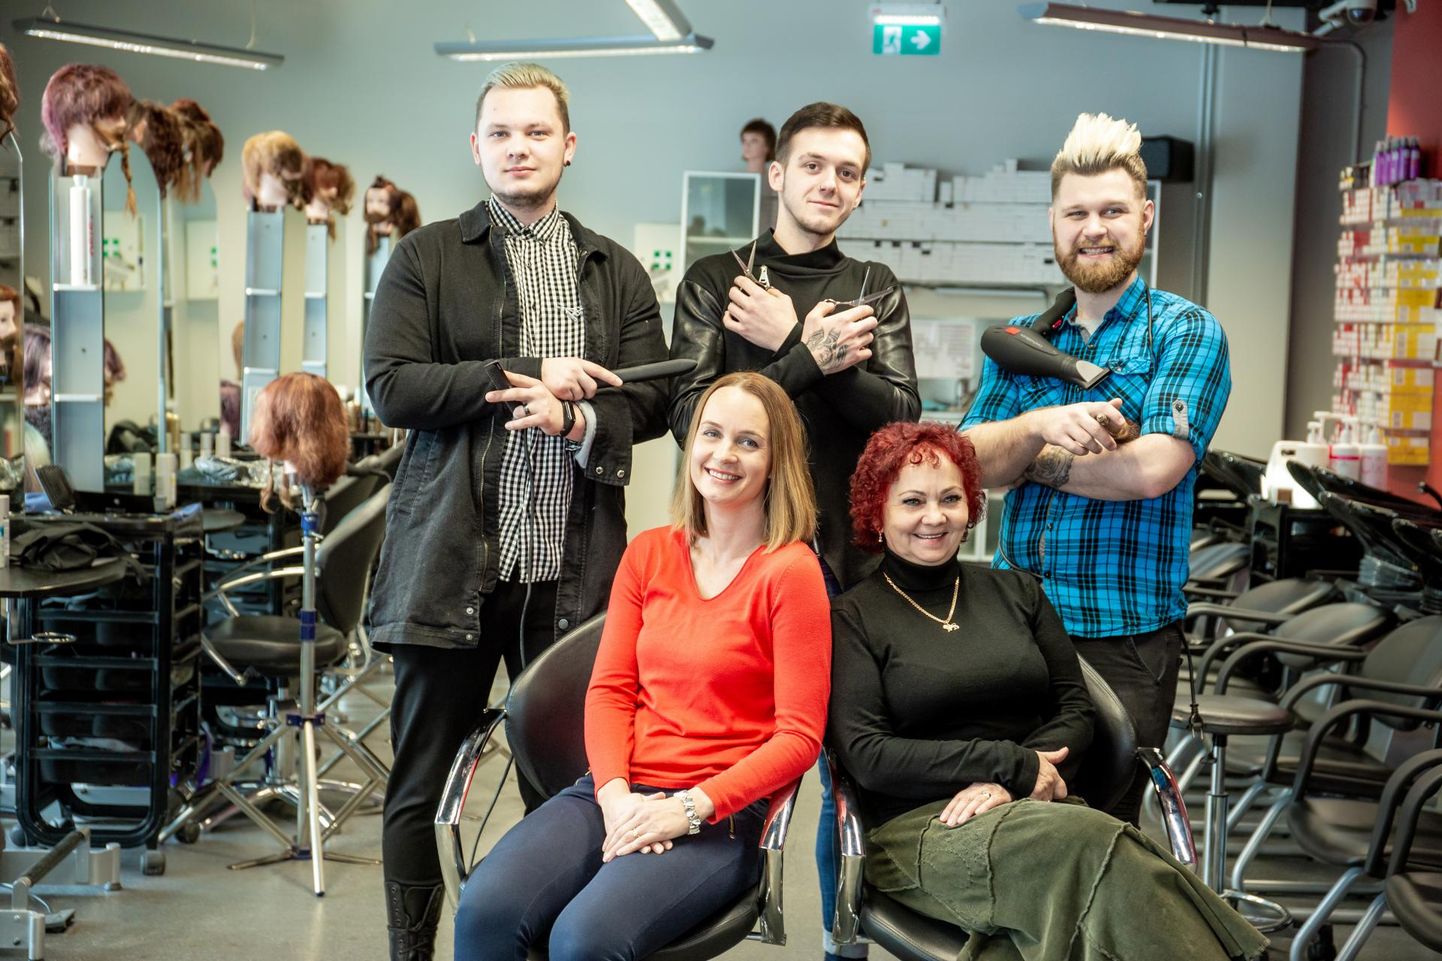 Pärnumaa kutsehariduskeskuse juuksuri eriala lõpetavad (vasakult) Martin Jürgenson, Riiko Kojoni ja Reymo Rebane, kelle ees kooli juuksurisalongis istuvad metsakasvatajad Terje Prisk ja Inga Kaldvee.